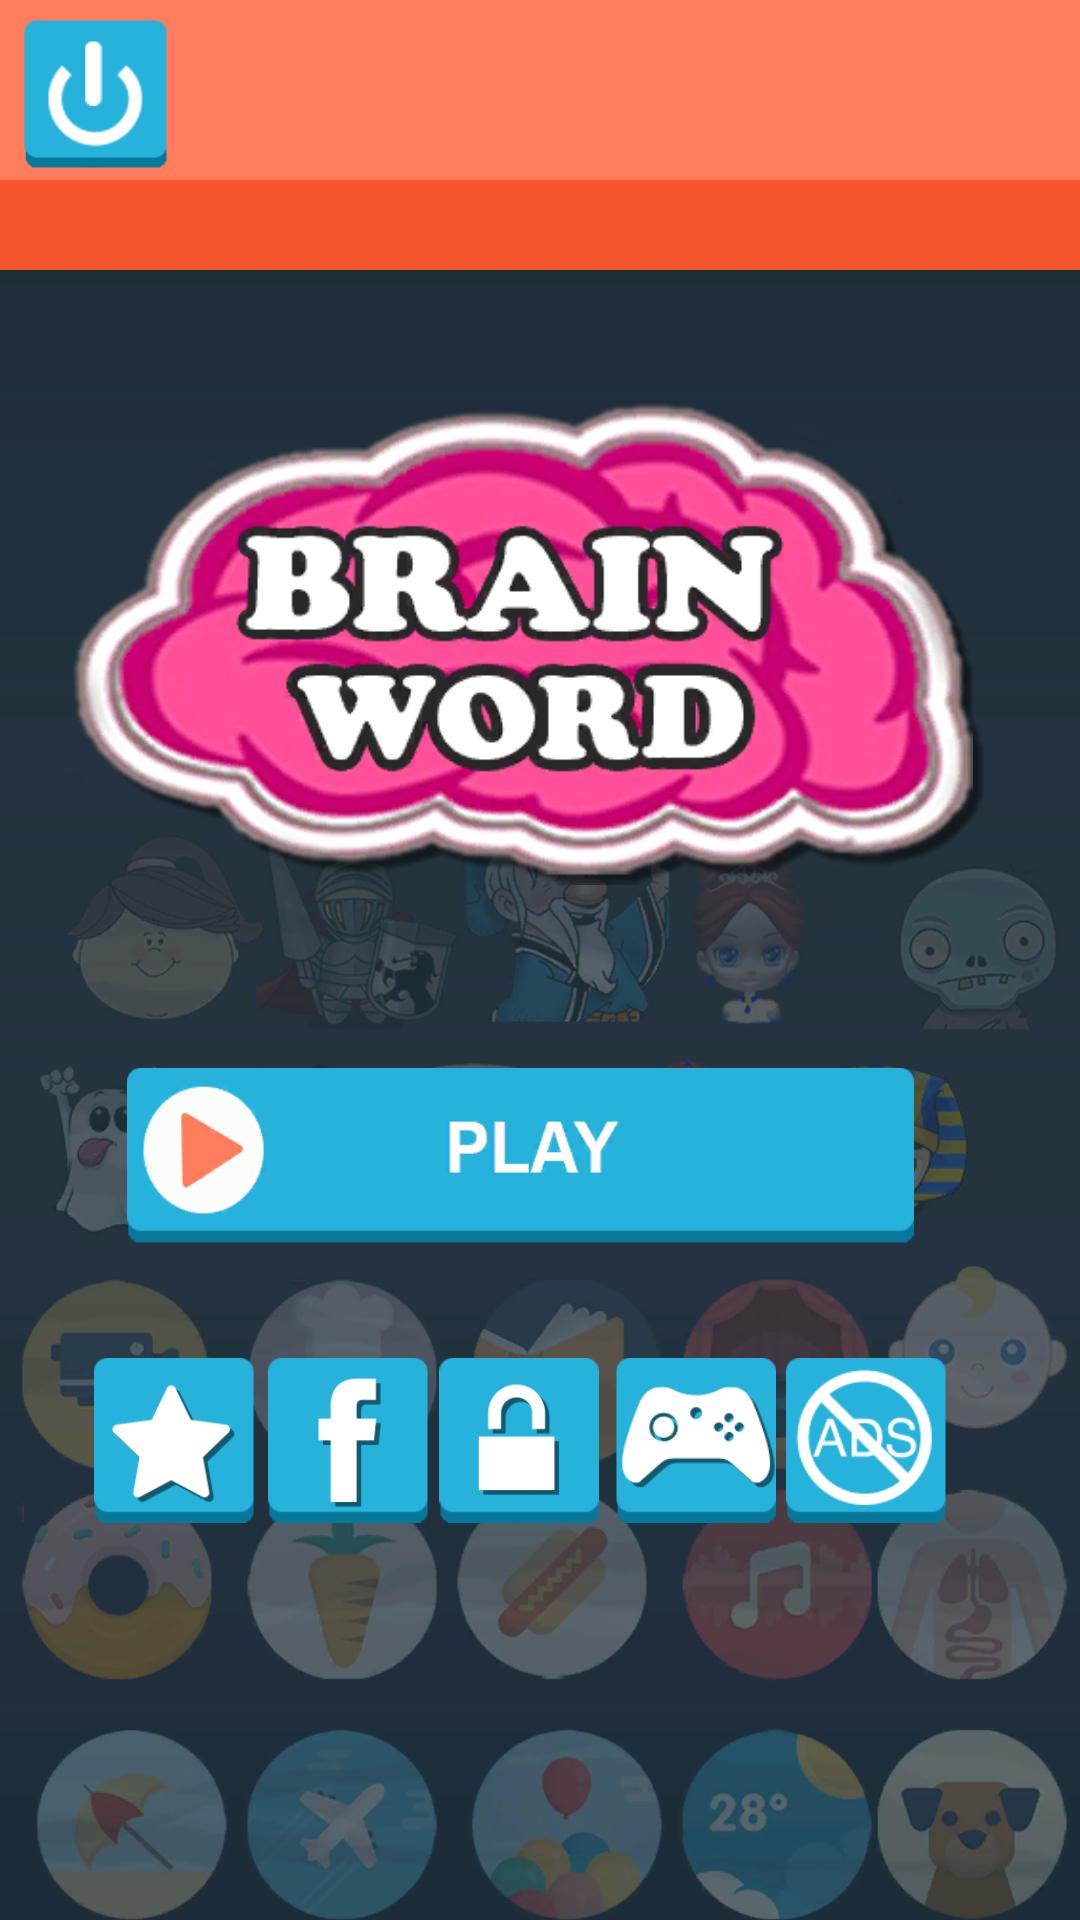 Brain words